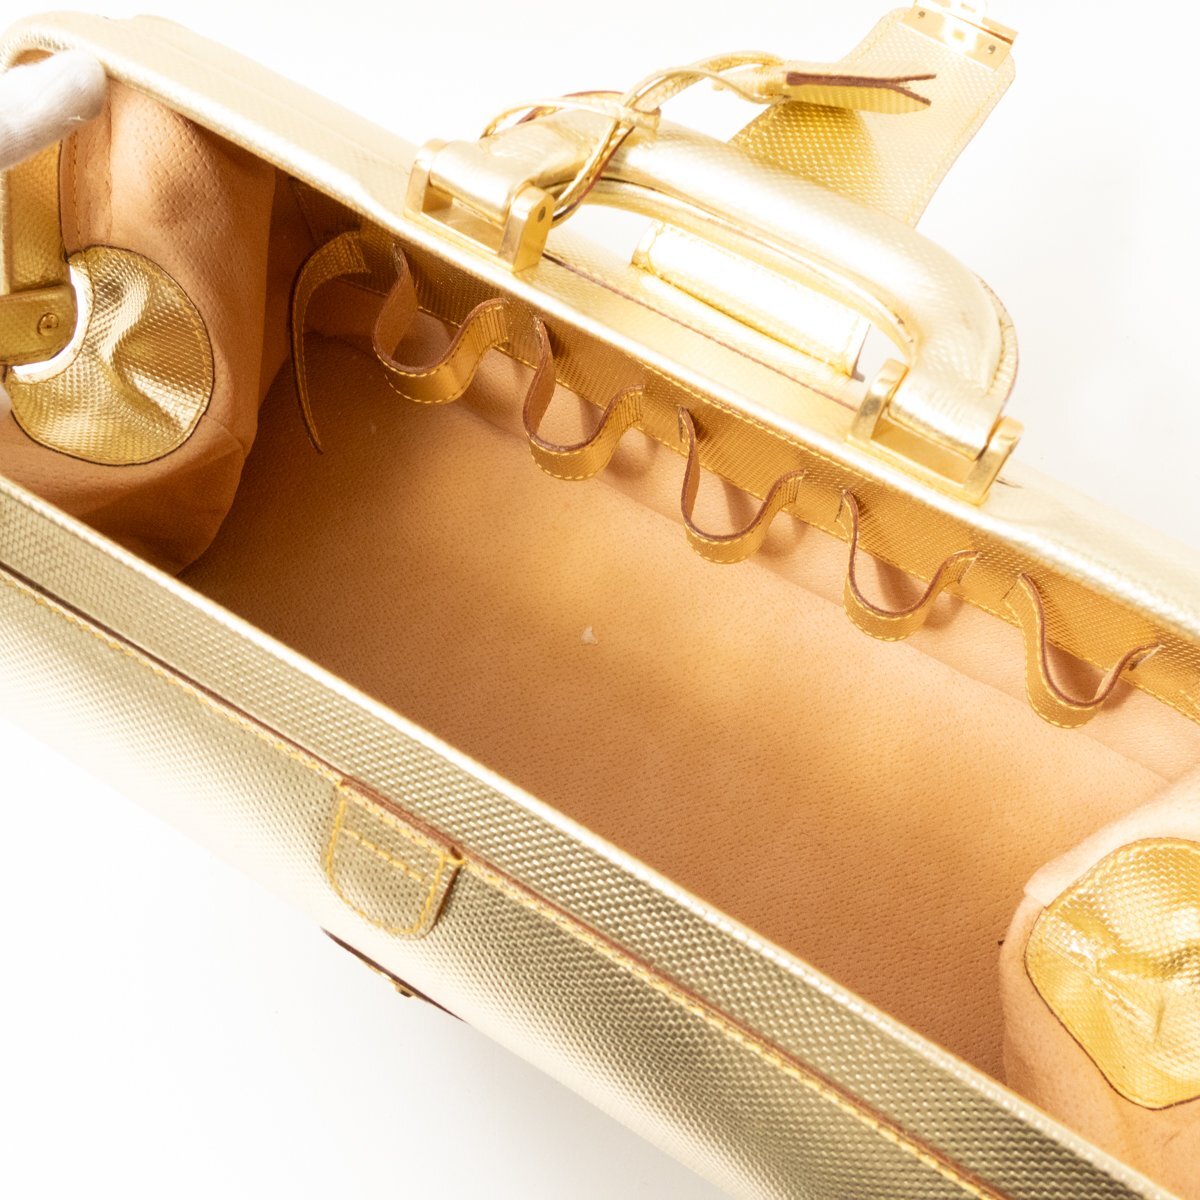 [1 иен старт ]PIAA JEANS сумка "Boston bag" Gold золотой цвет кожа натуральная кожа Италия производства унисекс для мужчин и женщин ключ имеется рука ..bag портфель сумка 